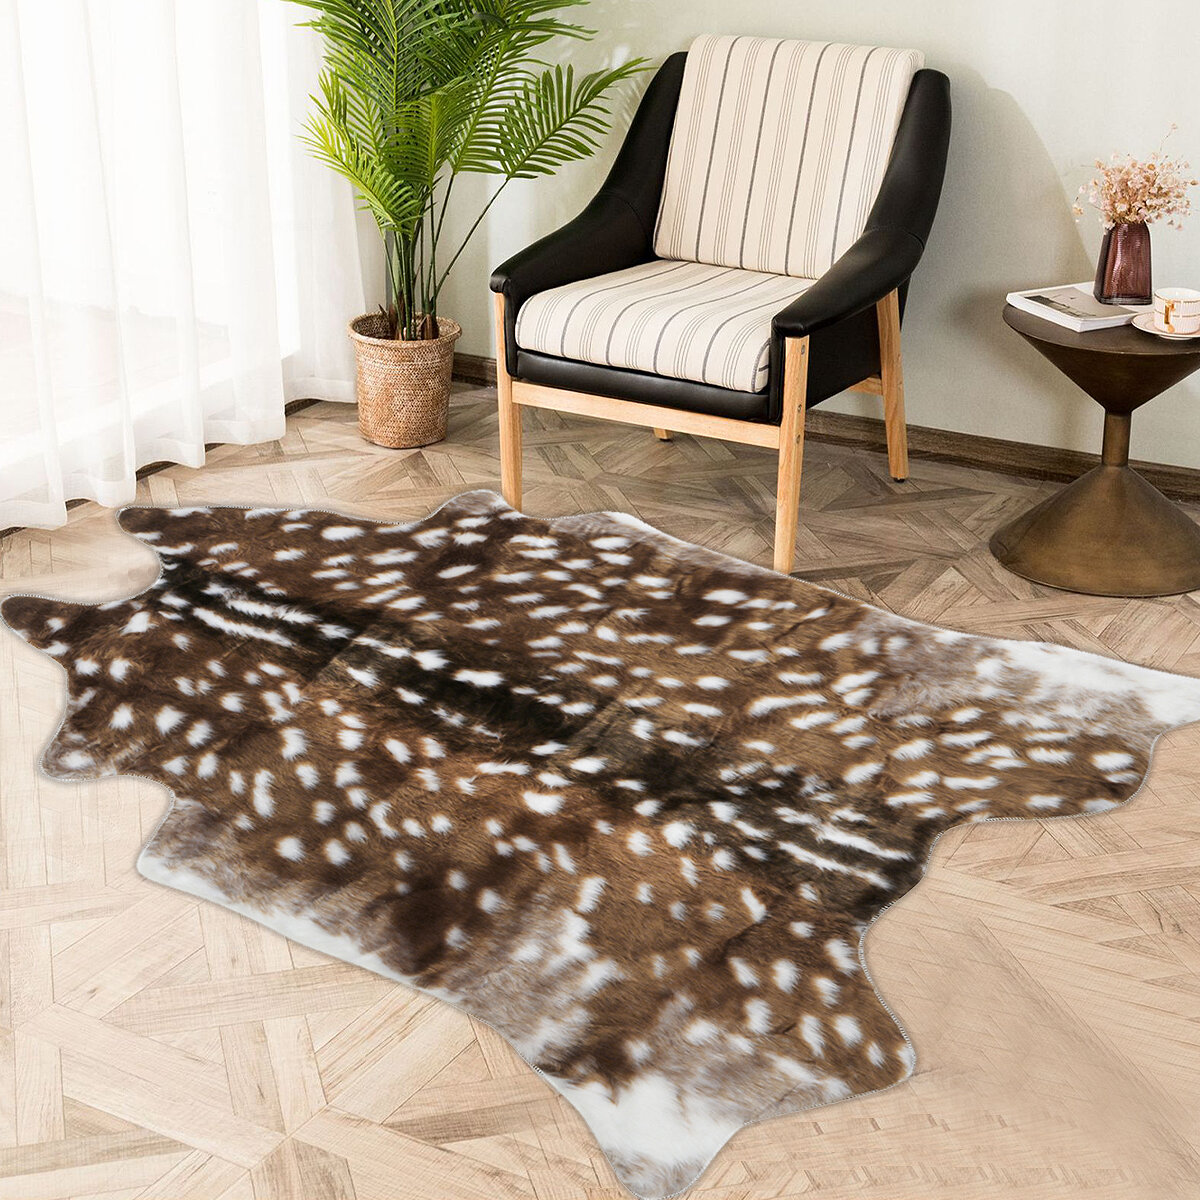 

78cmx108cm Faux Fur Sika Deer Print Animal Skin Hide Pelt Rug Mat Carpet Home Decor